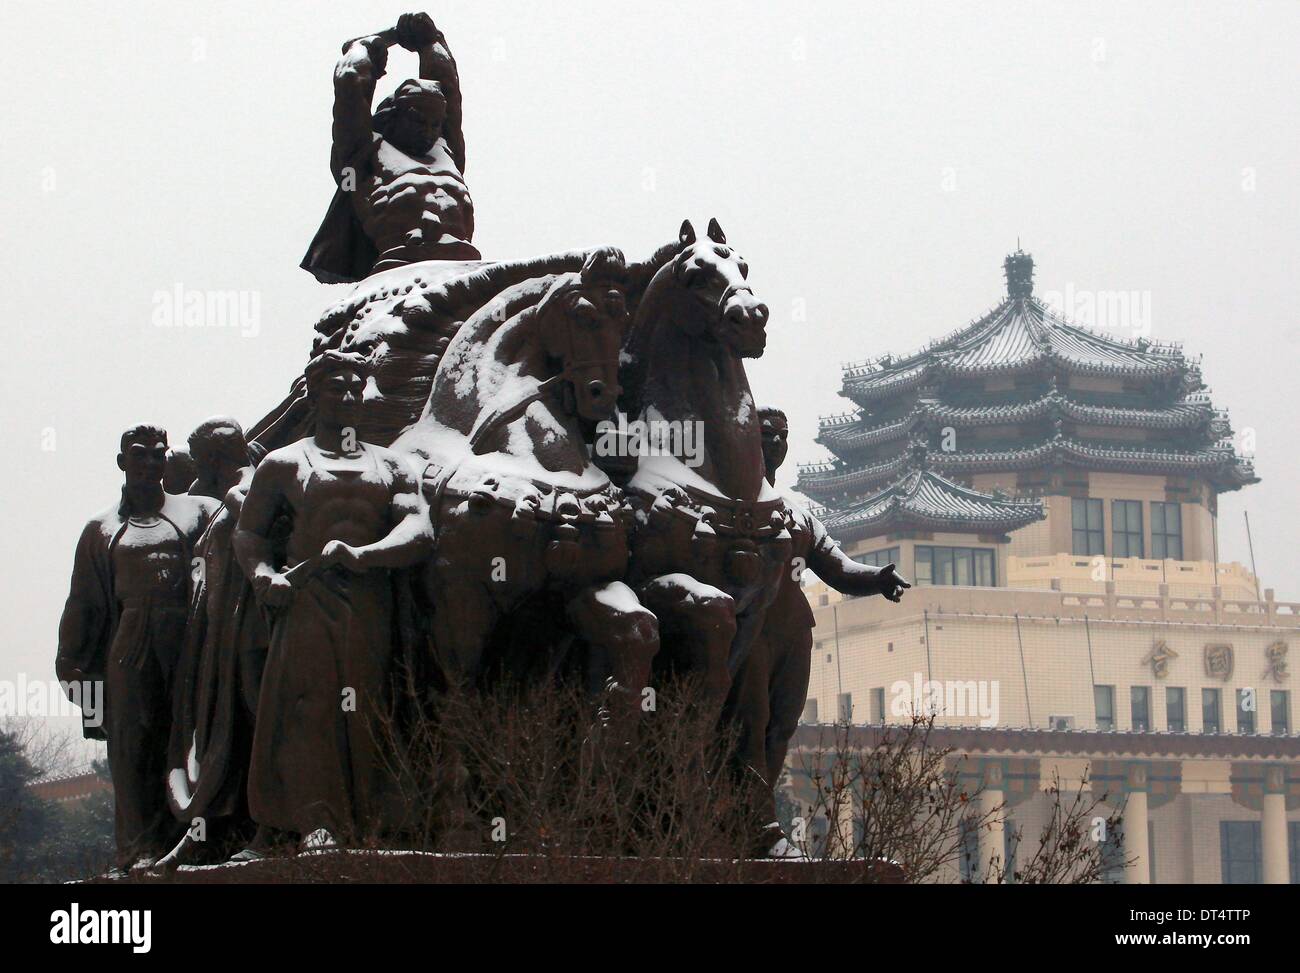 Pechino, Cina. 7 febbraio, 2014. La neve copre una rivoluzione culturale statua nei pressi di un centro espositivo a Pechino il 7 febbraio 2014. È la prima neve per colpire la Cina del capitale in quanto l'inverno è iniziato lo scorso anno. © Stephen rasoio/ZUMAPRESS.com/Alamy Live News Foto Stock